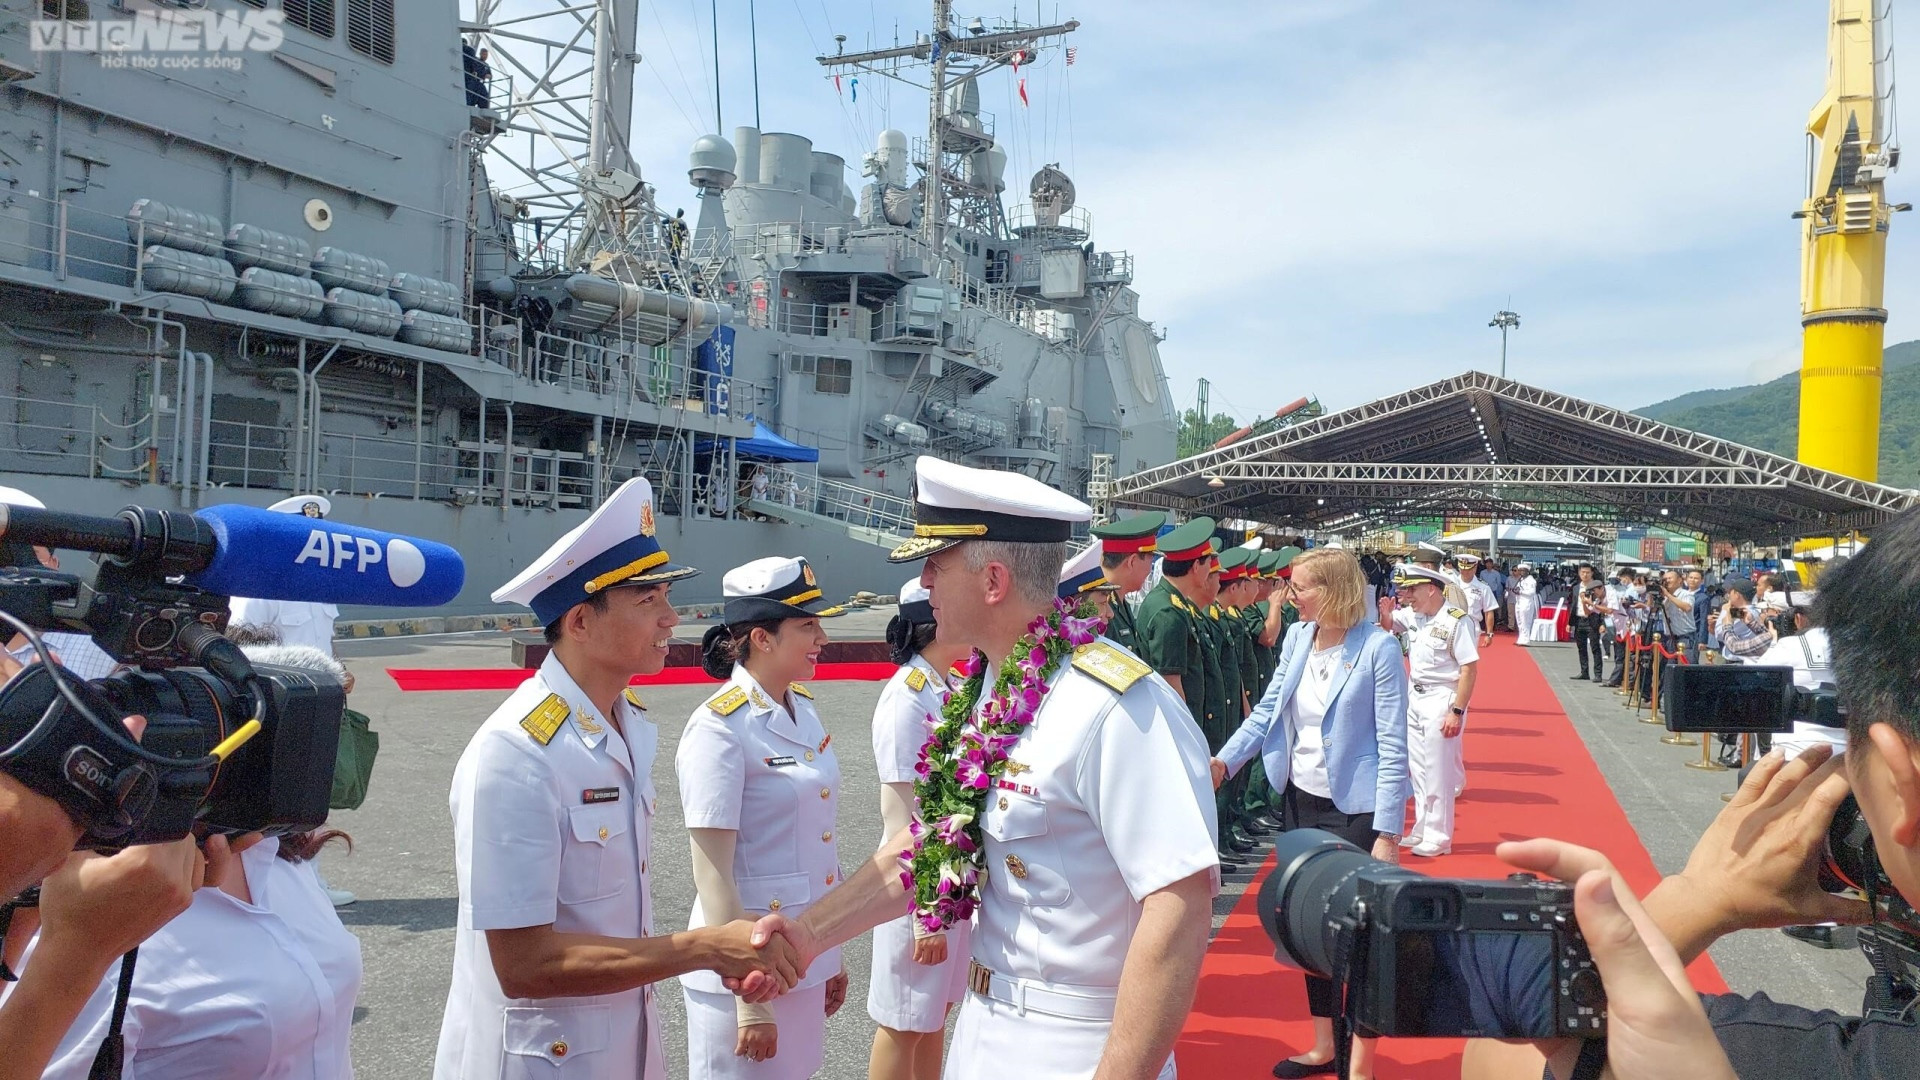 Đoàn tàu Hải quân Mỹ bắt đầu các hoạt động tại Đà Nẵng - 1